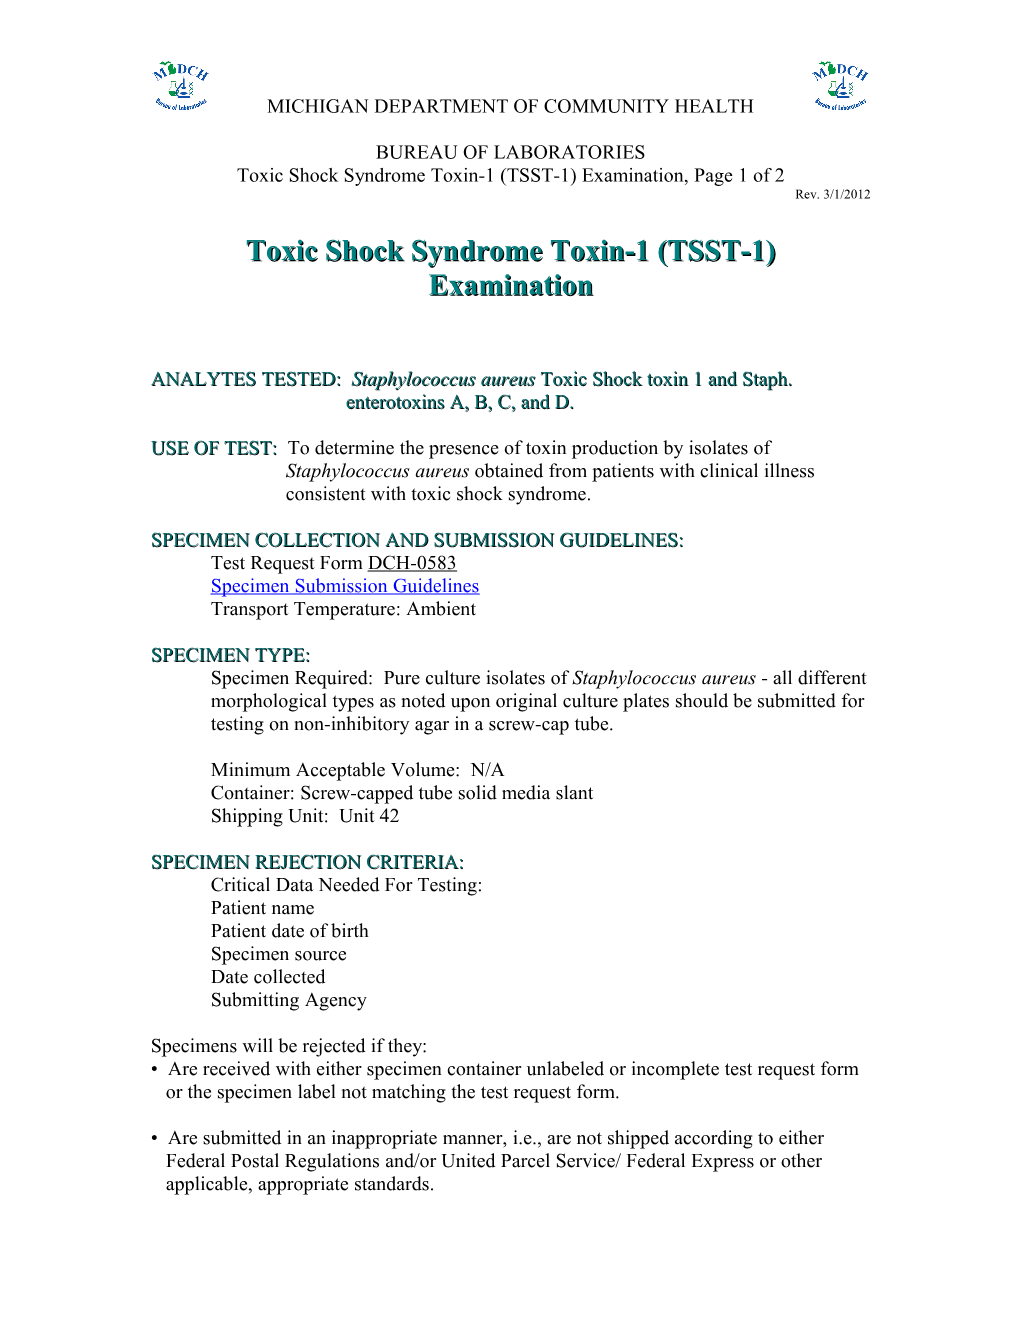 Toxic Shock Syndrome Toxin-1 (TSST-1) Examination